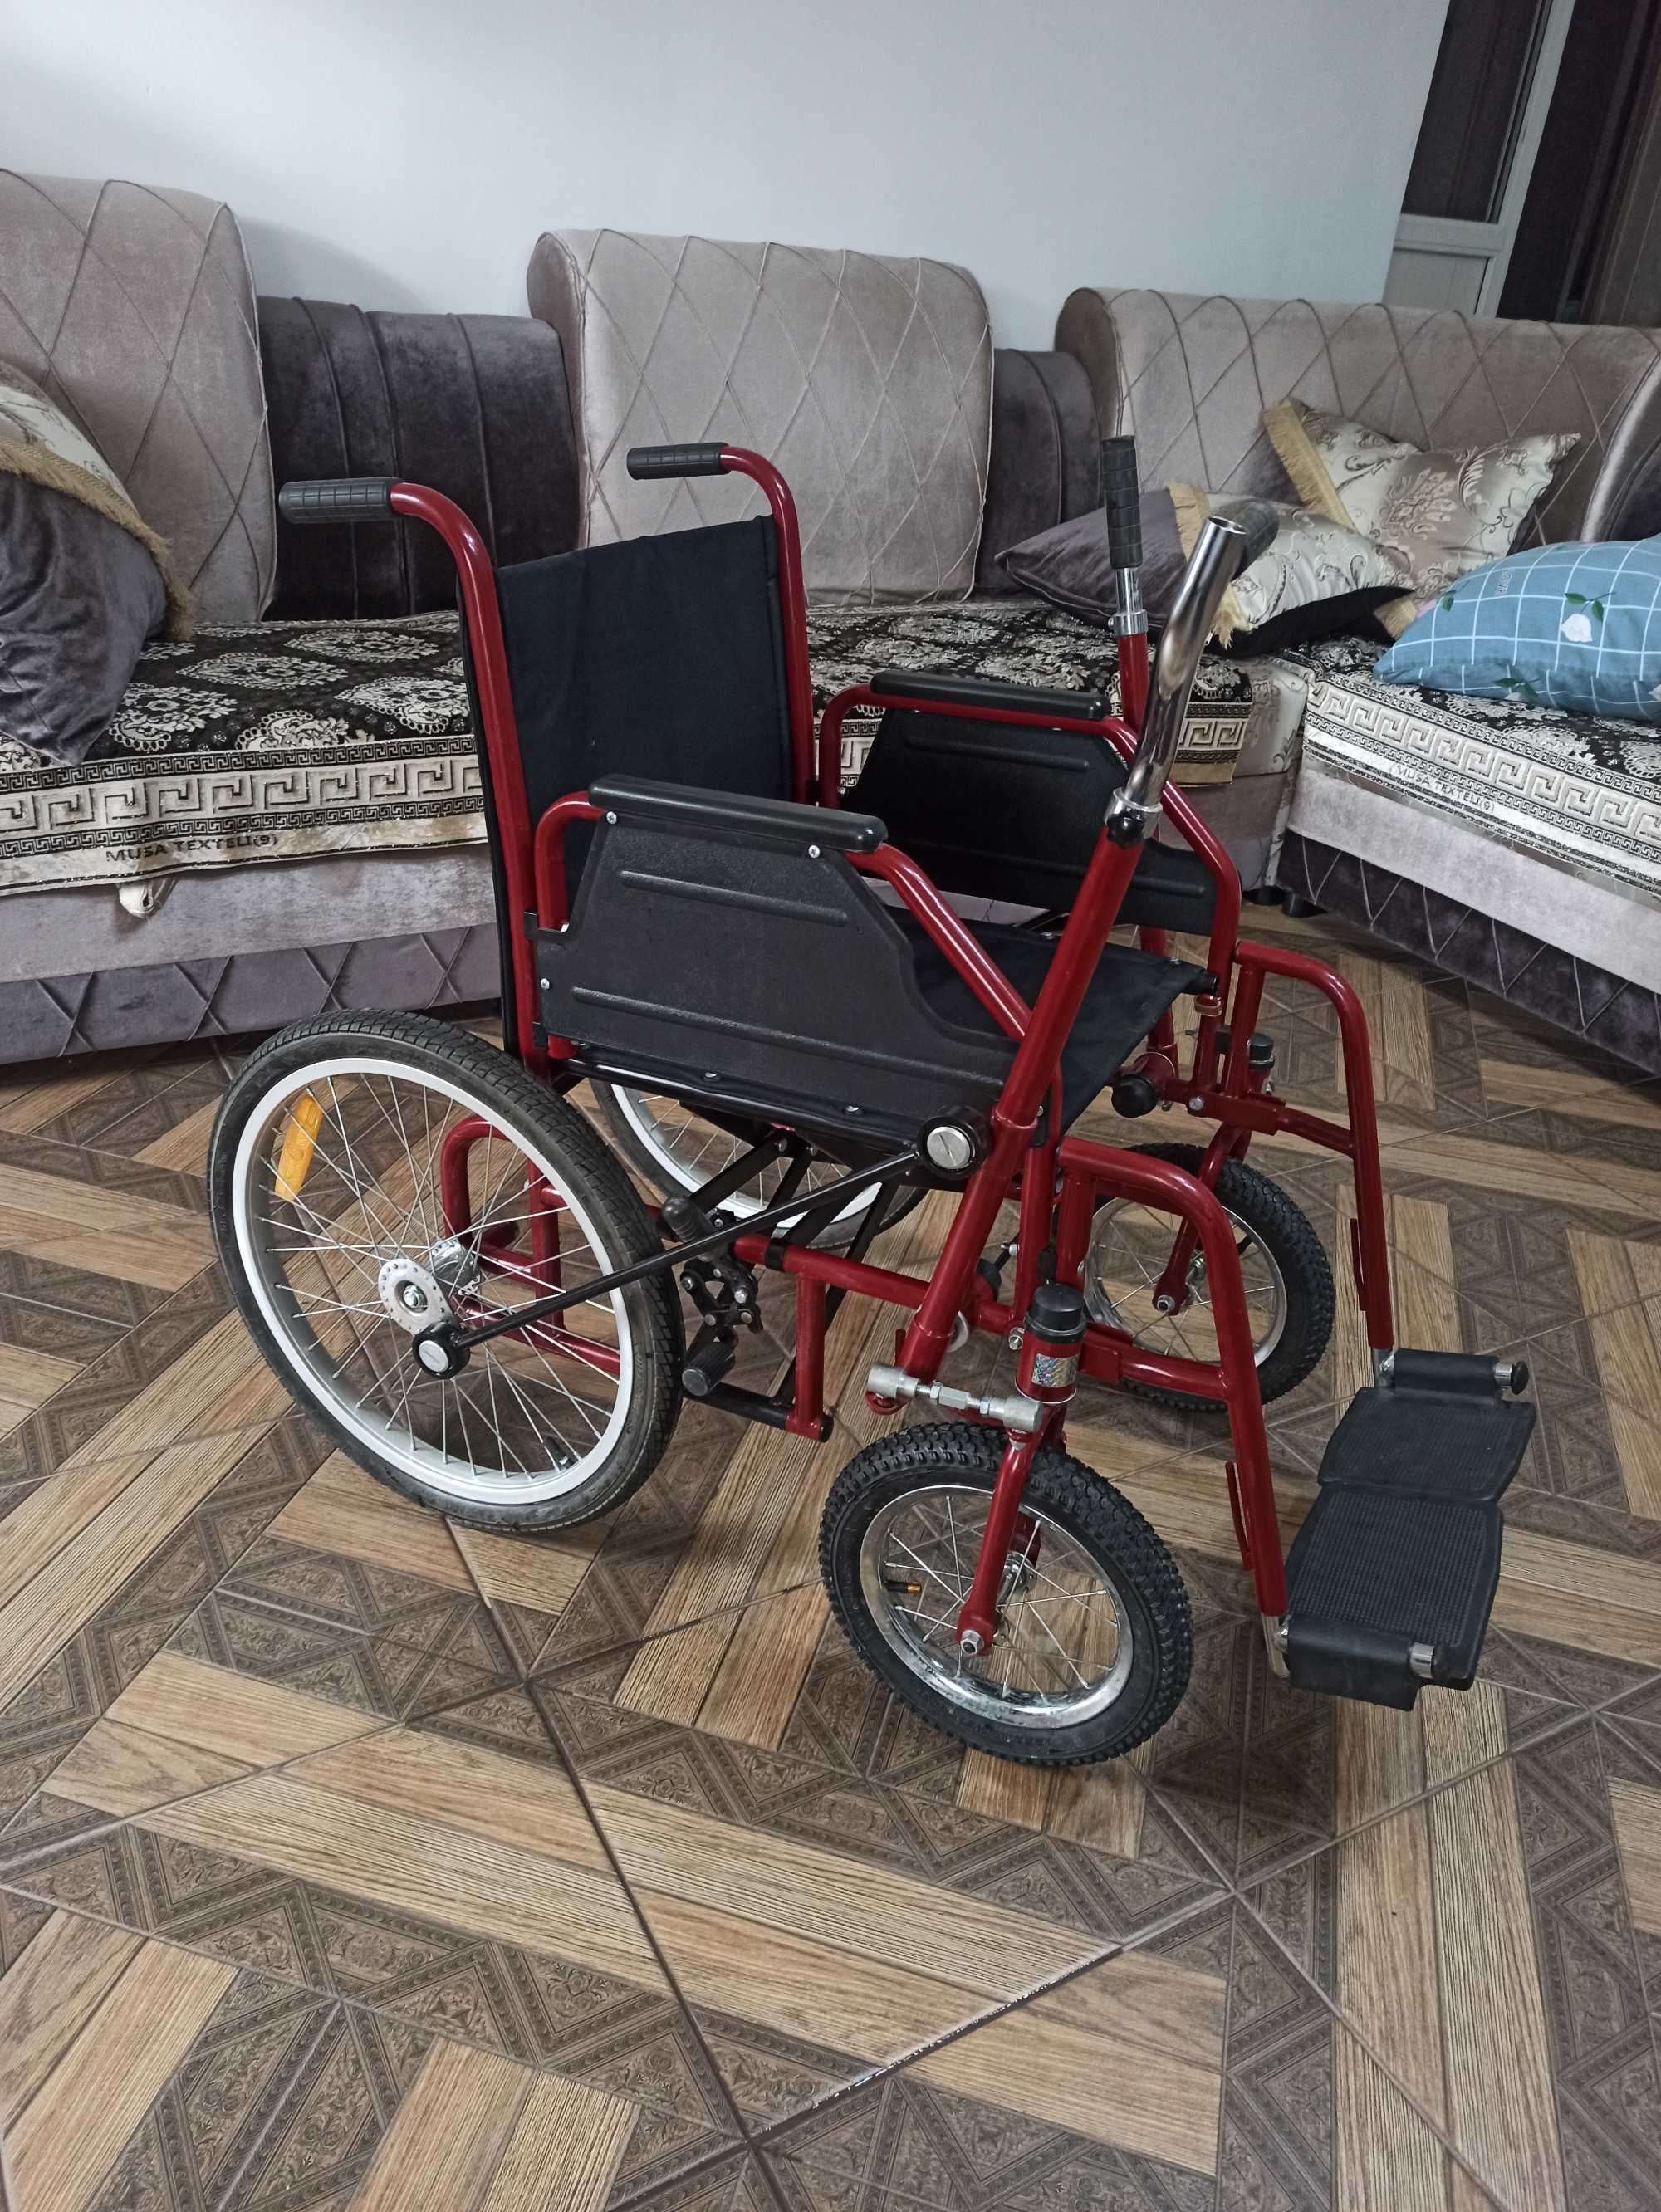 6
Инвалидная коляска с рычагами nogironlar aravachasi Ногиронлар

4 37